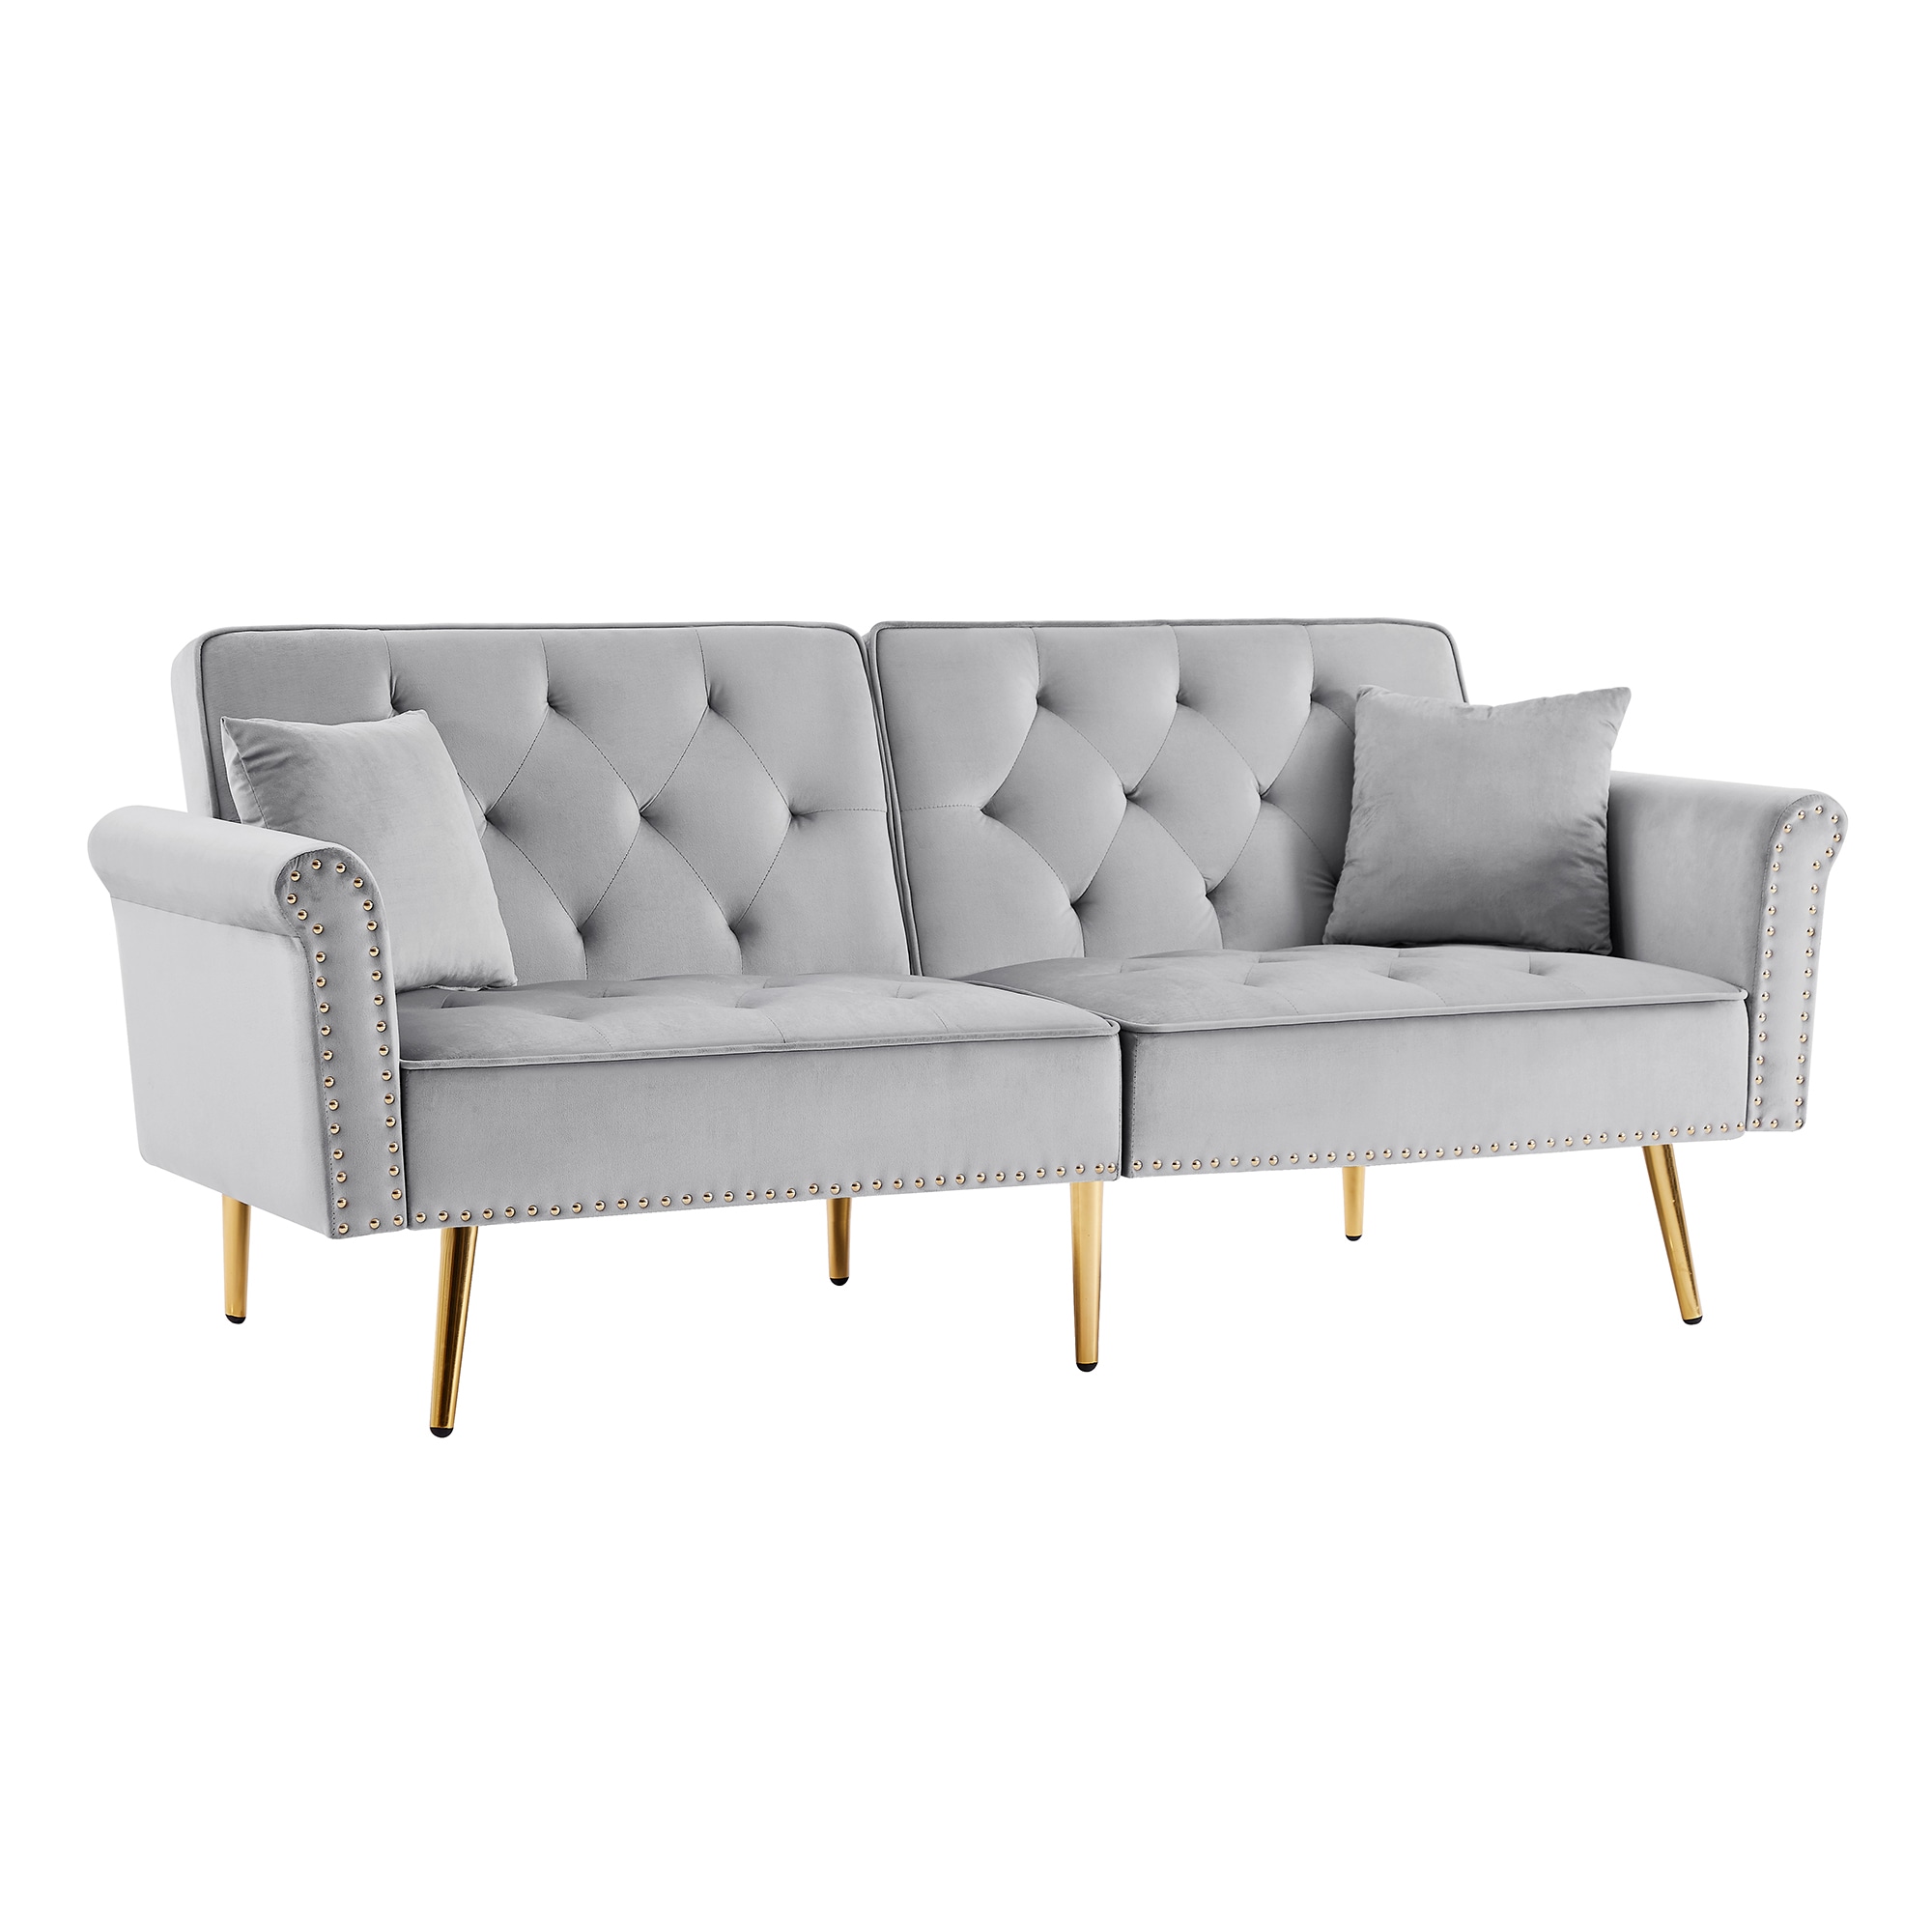 CASAINC Modern stylish upholstered sofa 76.7-in Modern Gray Velvet Sofa ...